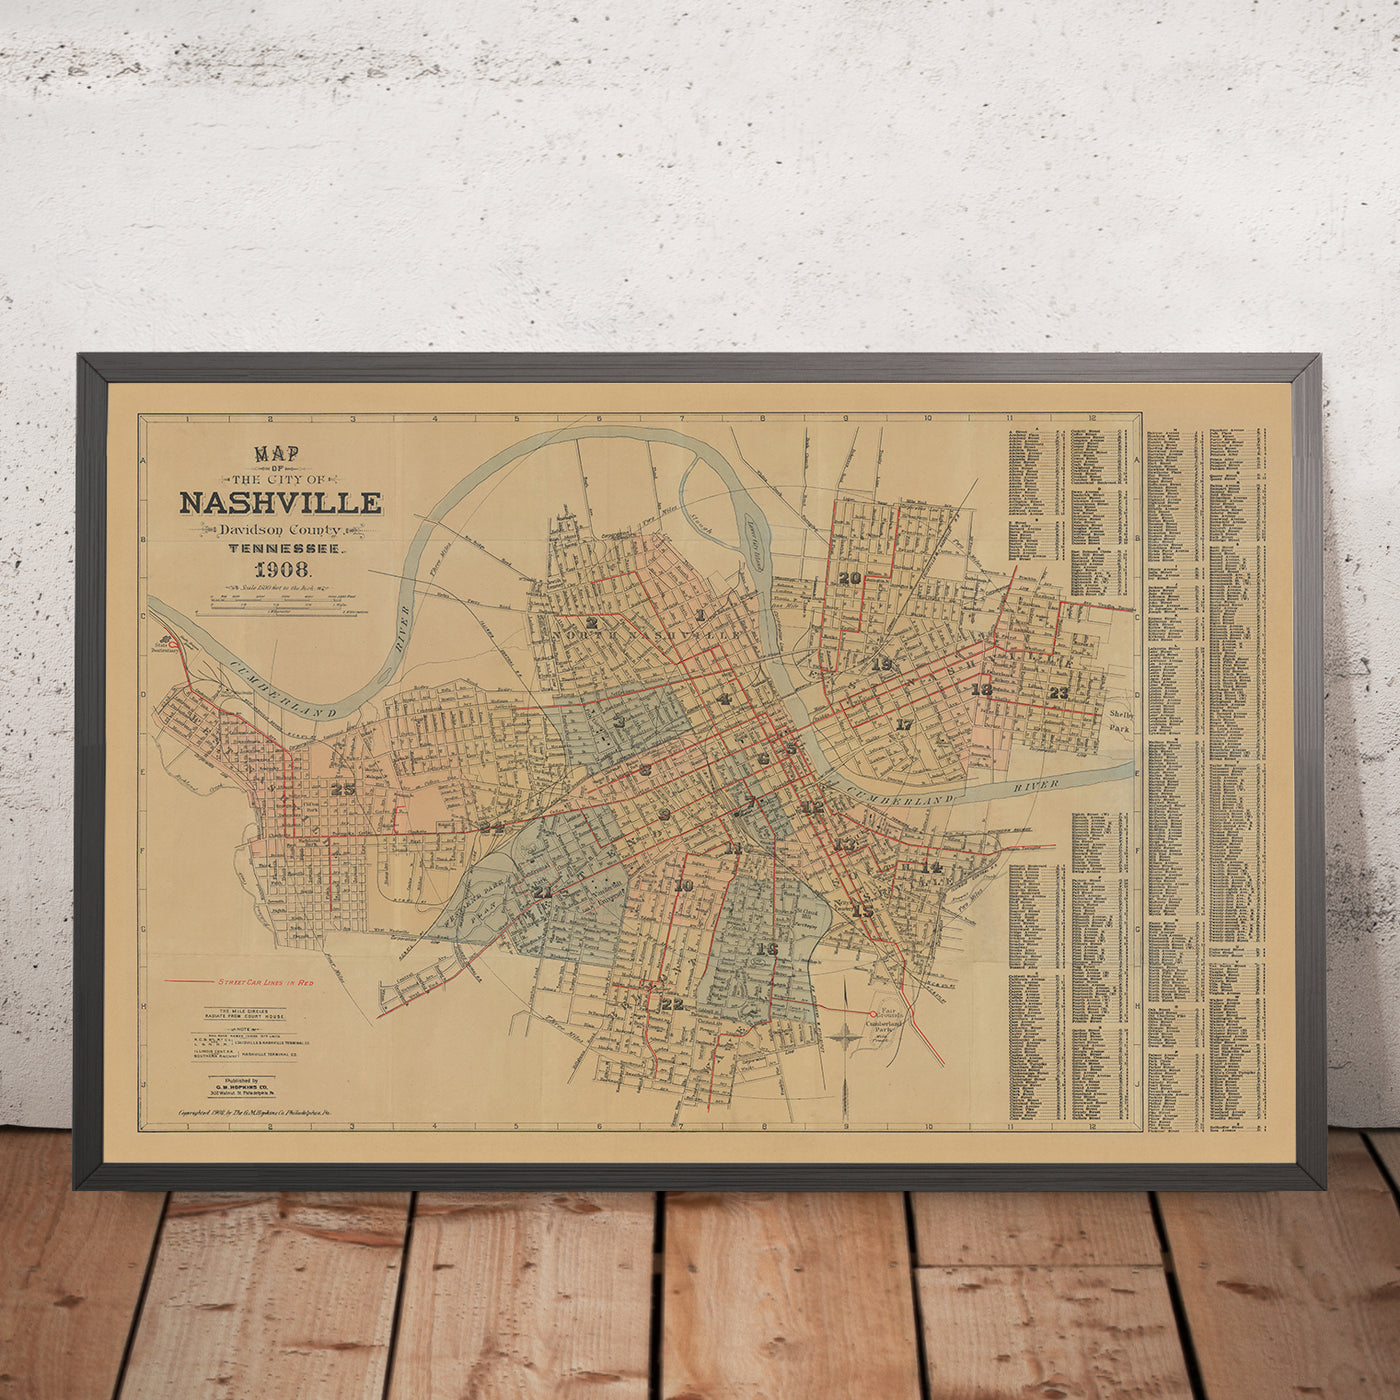 Ancienne carte de Nashville par Hopkins, 1908 : rivière Cumberland, Capitole de l'État, Vanderbilt, Centennial Park, Ryman Auditorium